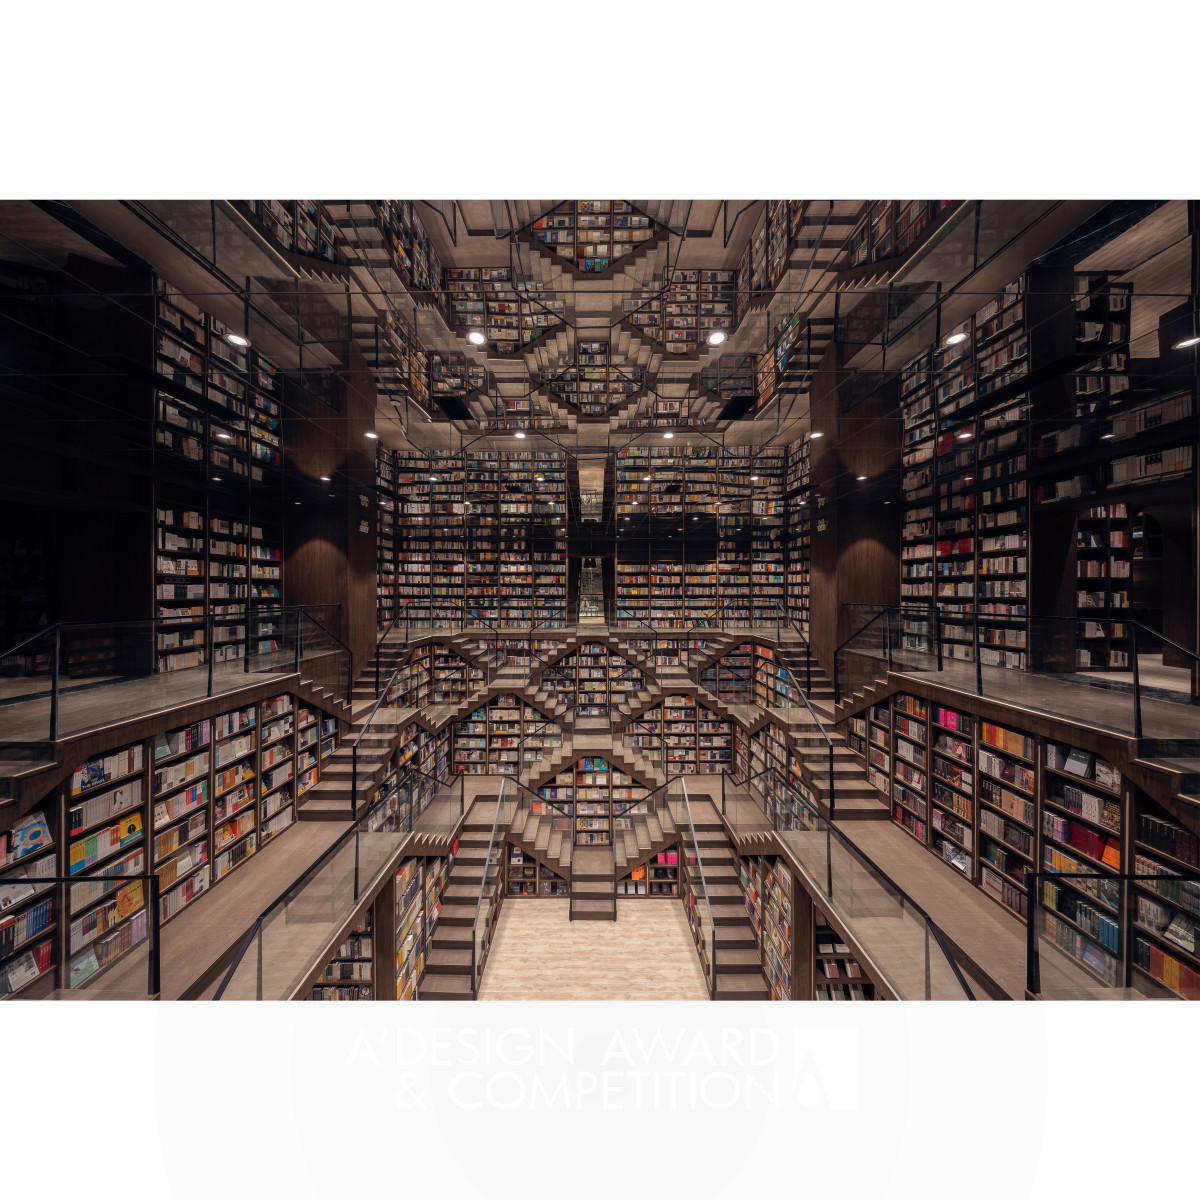  Bookstore